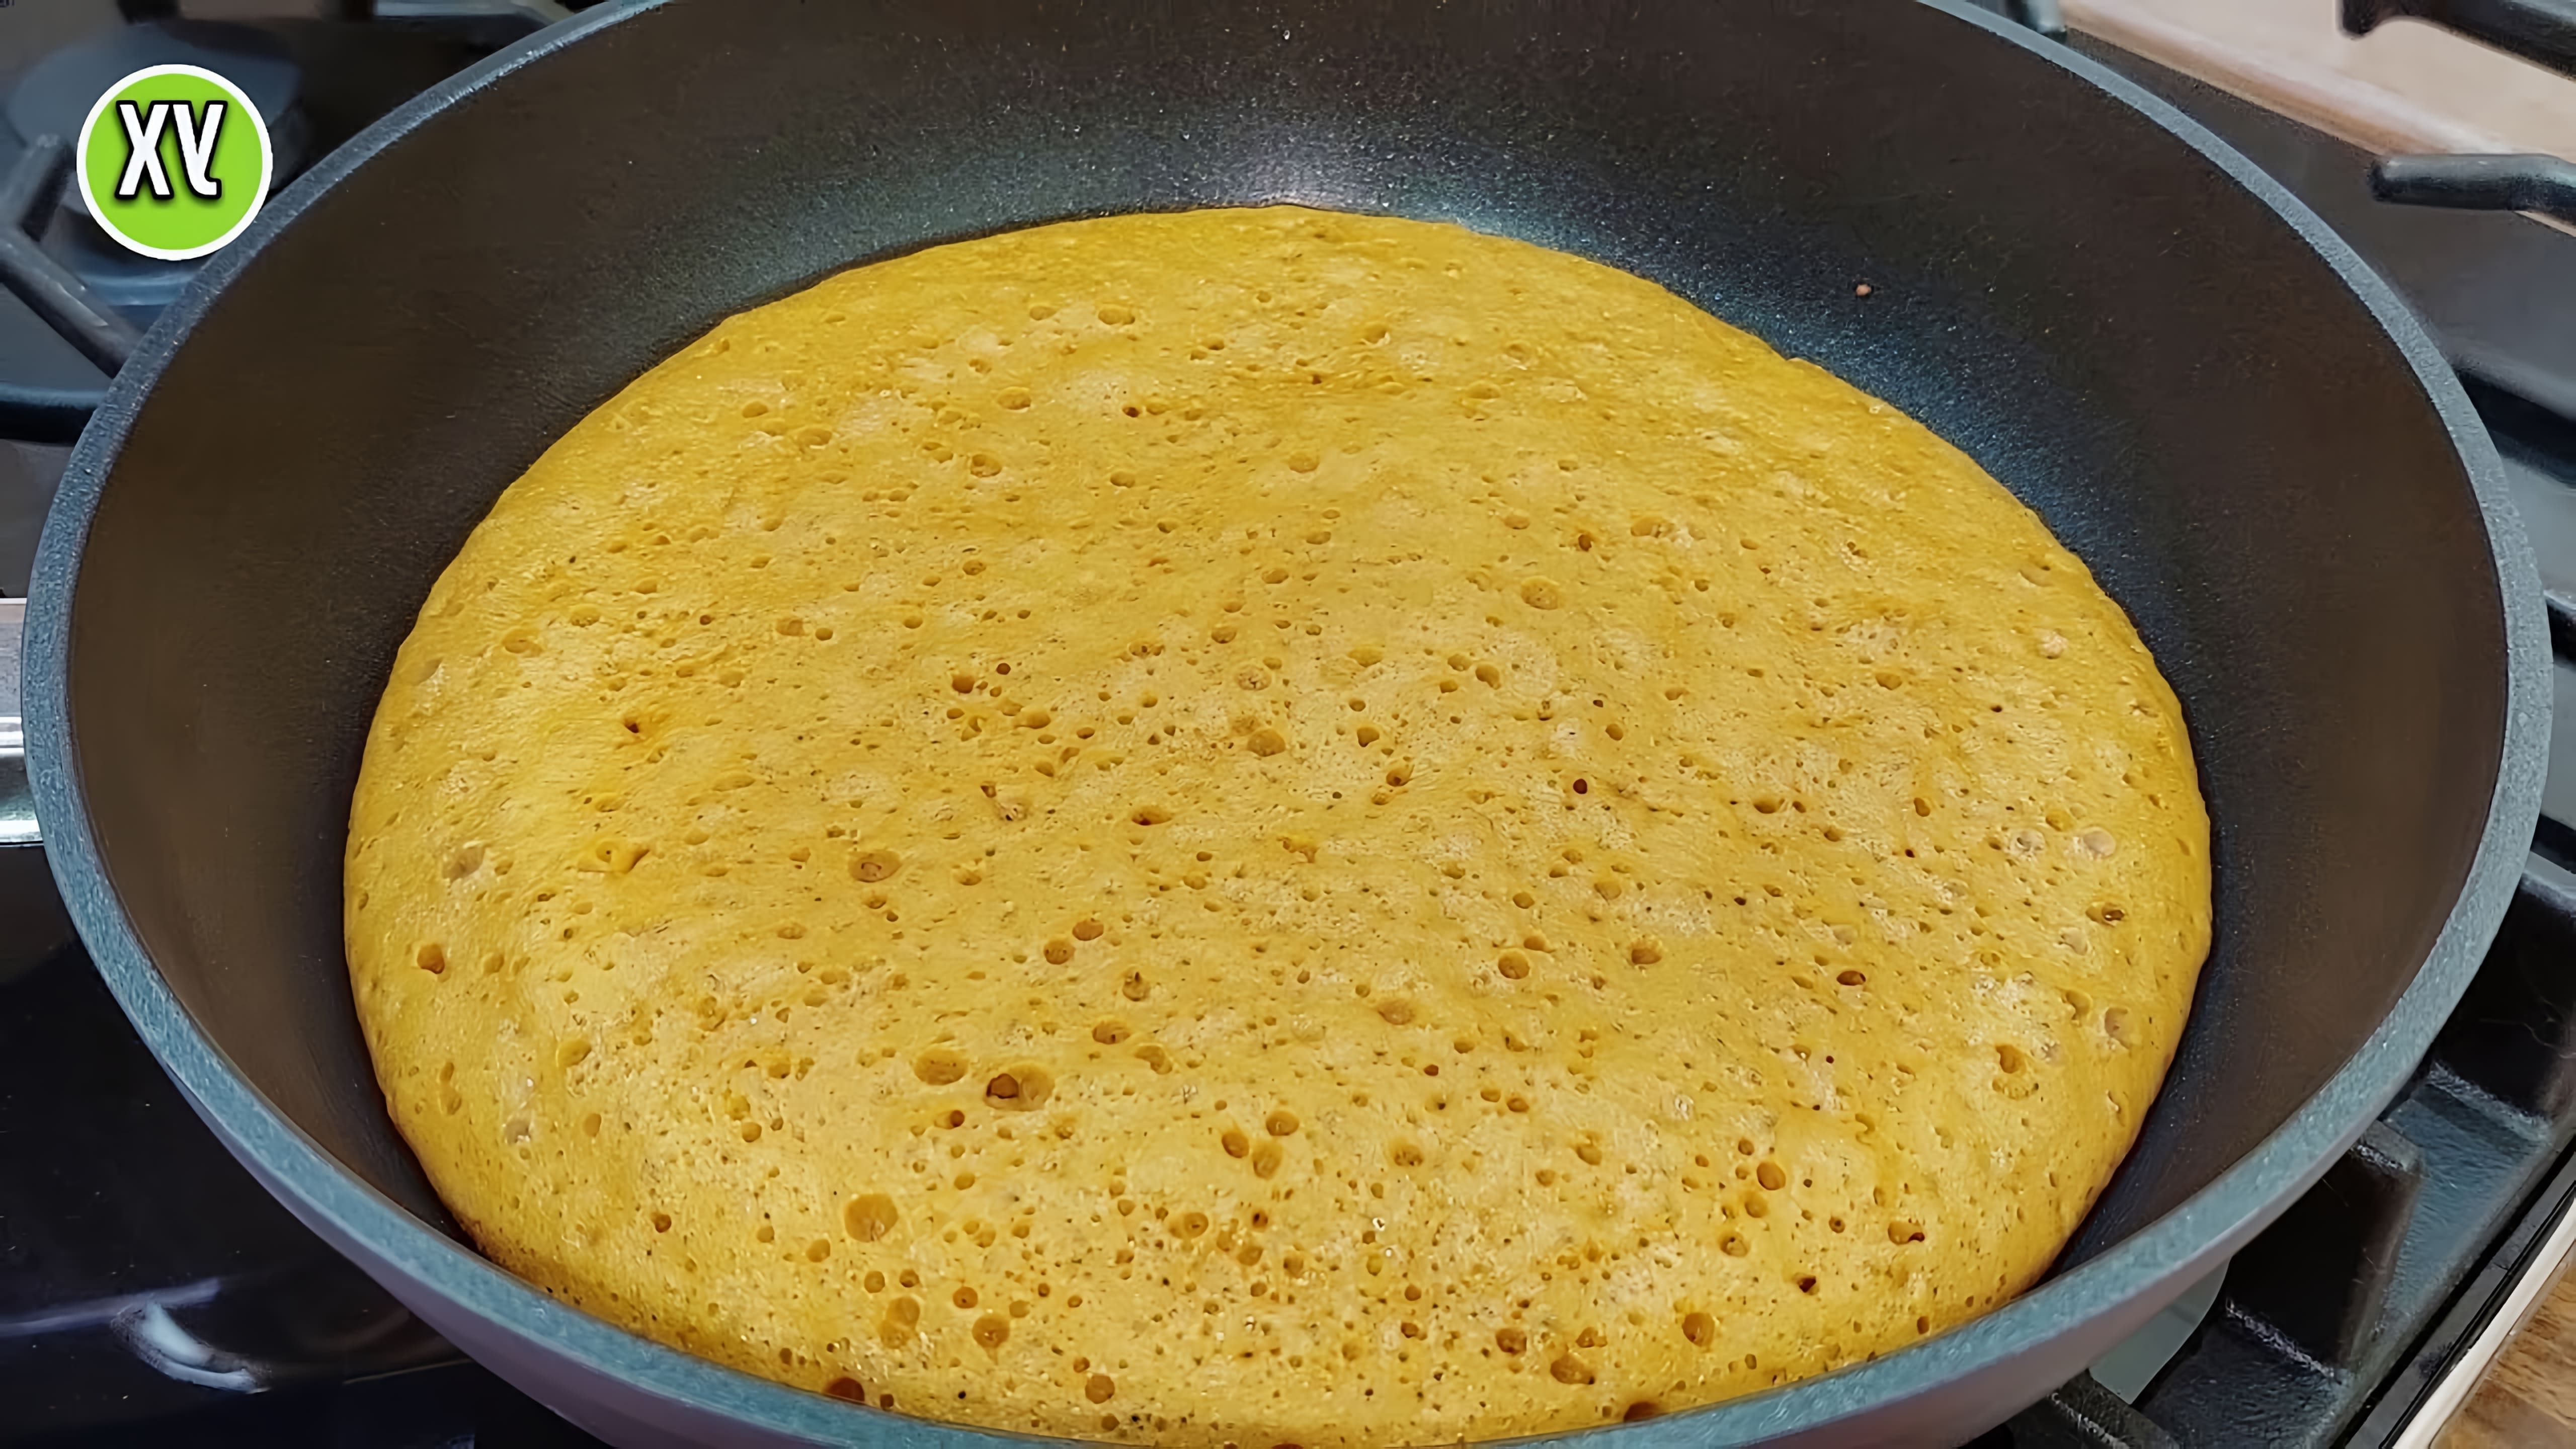 В этом видео демонстрируется процесс приготовления знаменитого торта "Медовик" на сковороде